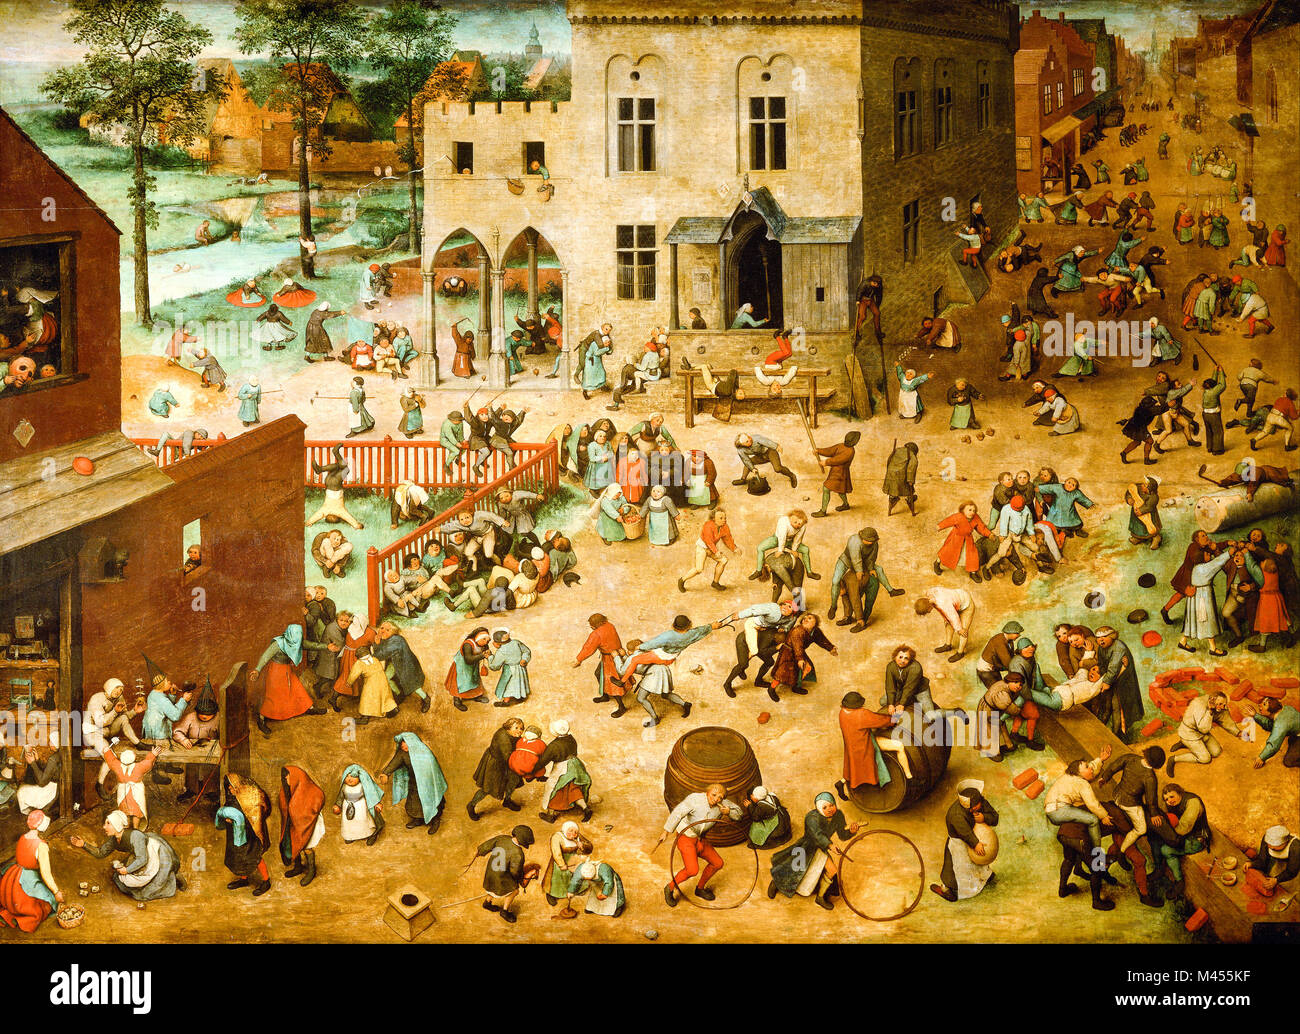 Pieter Bruegel, Children’s Games, 1560 Stock Photo